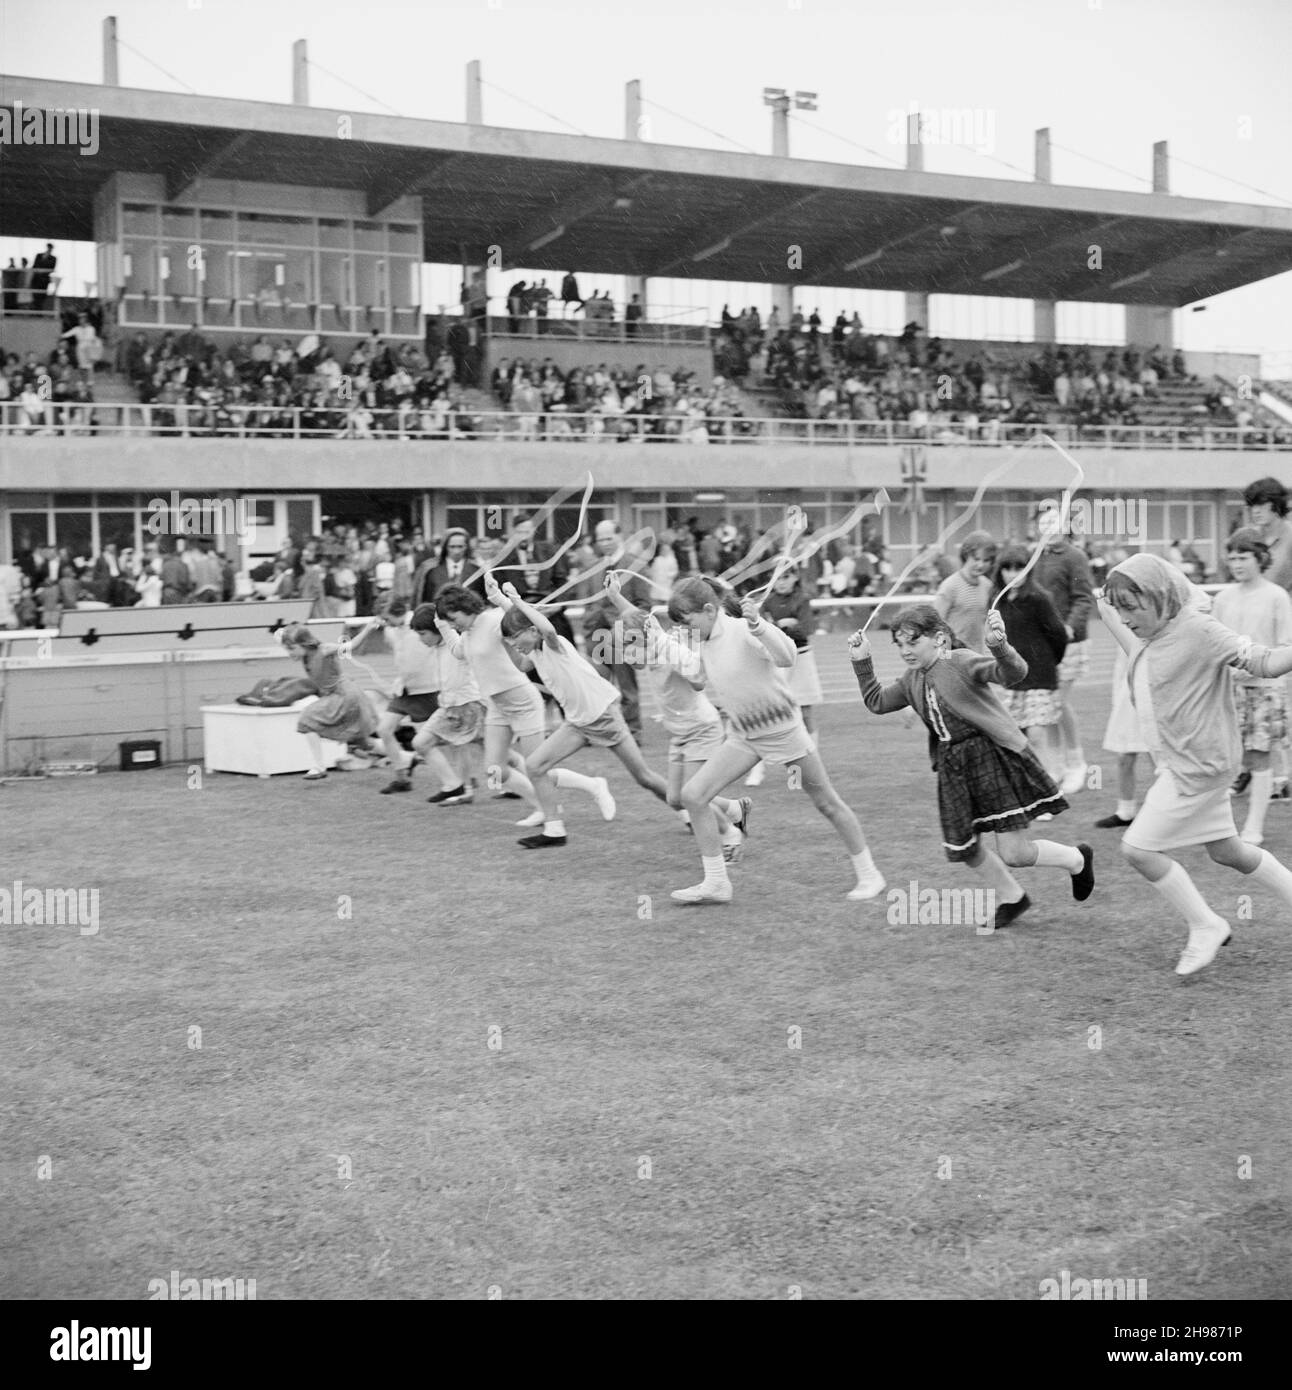 Copthall Stadium, Hendon, Barnett, London, 25/06/1966. Beim jährlichen Laing Sports Day im Copthall-Stadion verlassen die Mädchen die Startlinie eines Springsrennens mit Zuschauern in einem Stand darüber hinaus. Im Jahr 1966 fand am 25th. Juni der jährliche Laing Employees' Sports Day im Copthall Stadium in Hendon statt. Es war das erste Mal, dass die Veranstaltung dort stattfand, nachdem zuvor der Laing Sports Ground in Elstree stattgefunden hatte. Eine Reihe von Veranstaltungen umfasste Leichtathletik und einen Fußballwettbewerb, und die Teilnehmer reisten von den regionalen Büros und Standorten des Unternehmens, darunter aus Schottland und Carlisle. Es gab Stockfoto